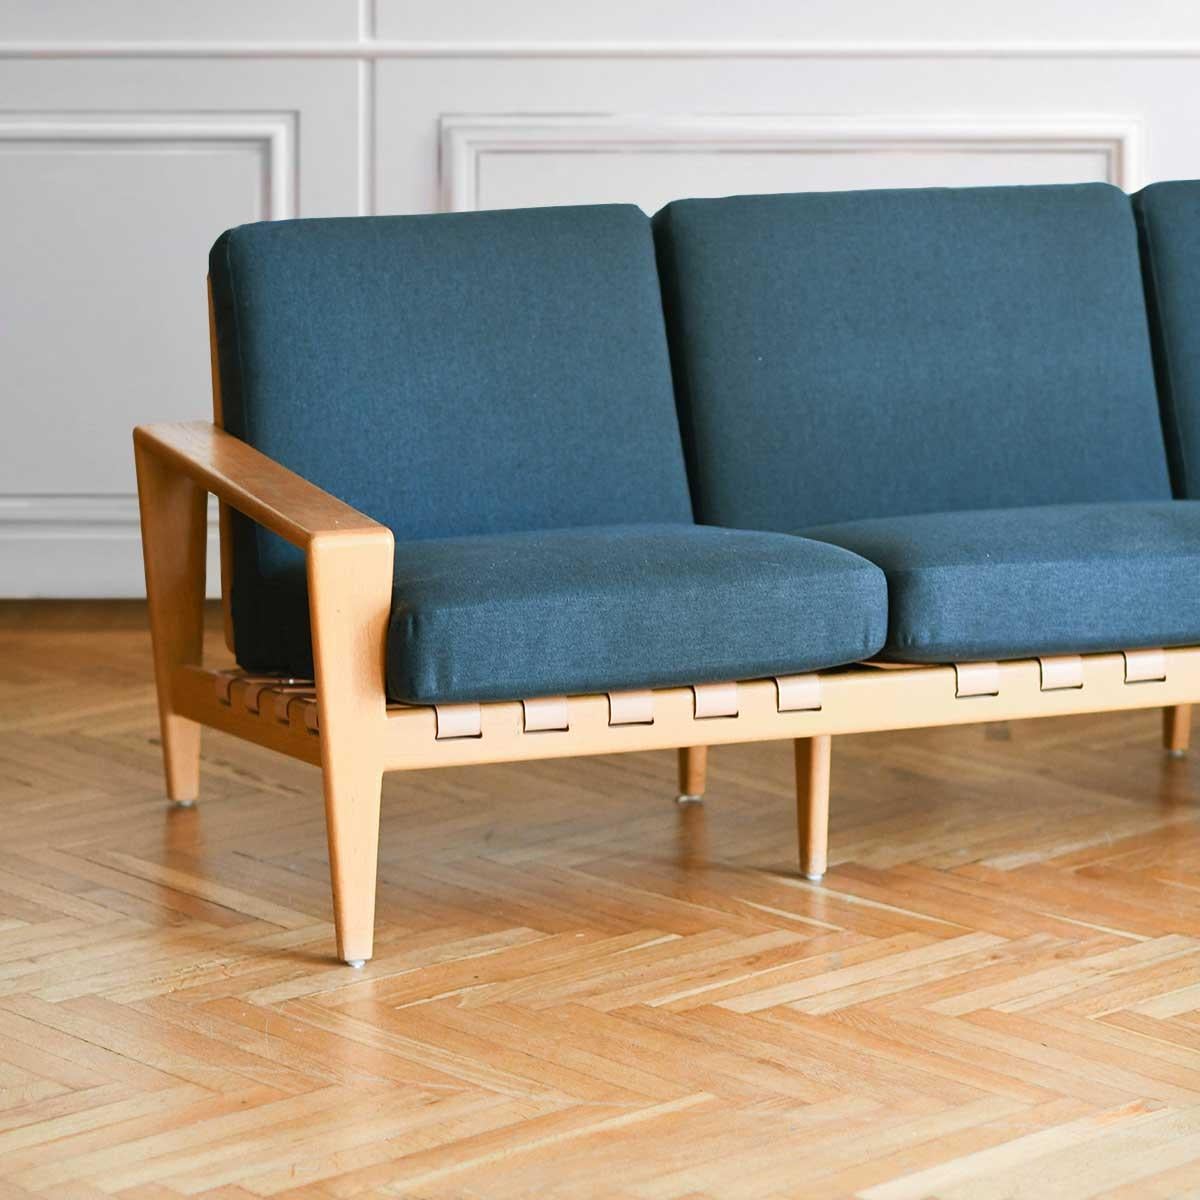 Mid-20th Century Svante Skogh 1957 “Bodo” Sofa in Swedish Oak For Sale